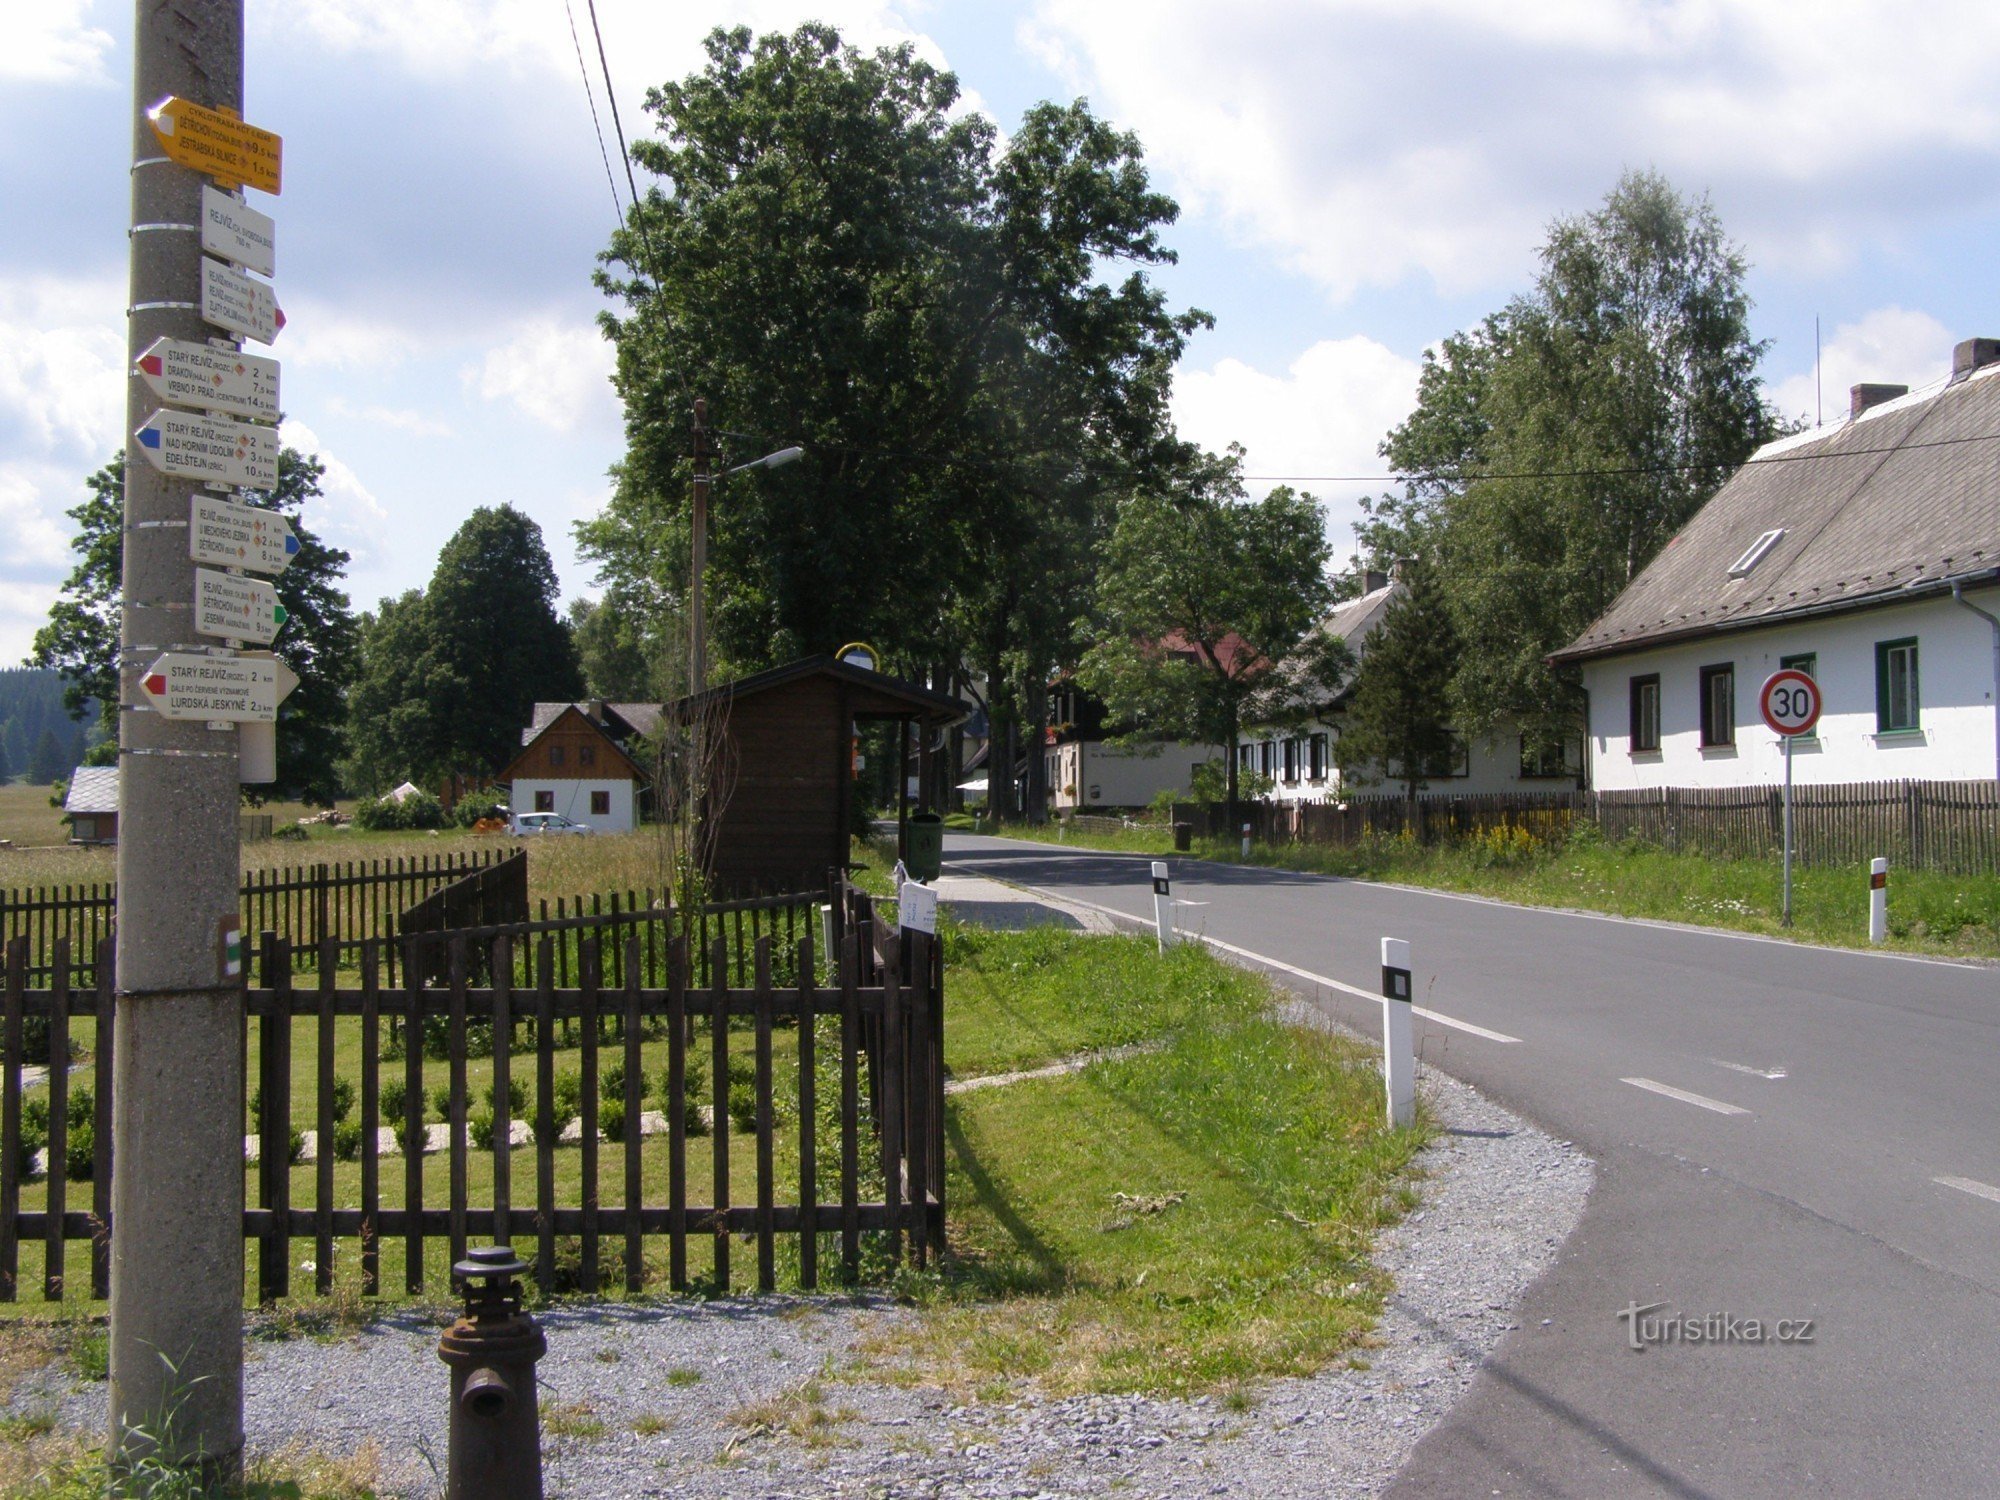 ngã tư du lịch - Rejvíz, nhà nhỏ Svoboda